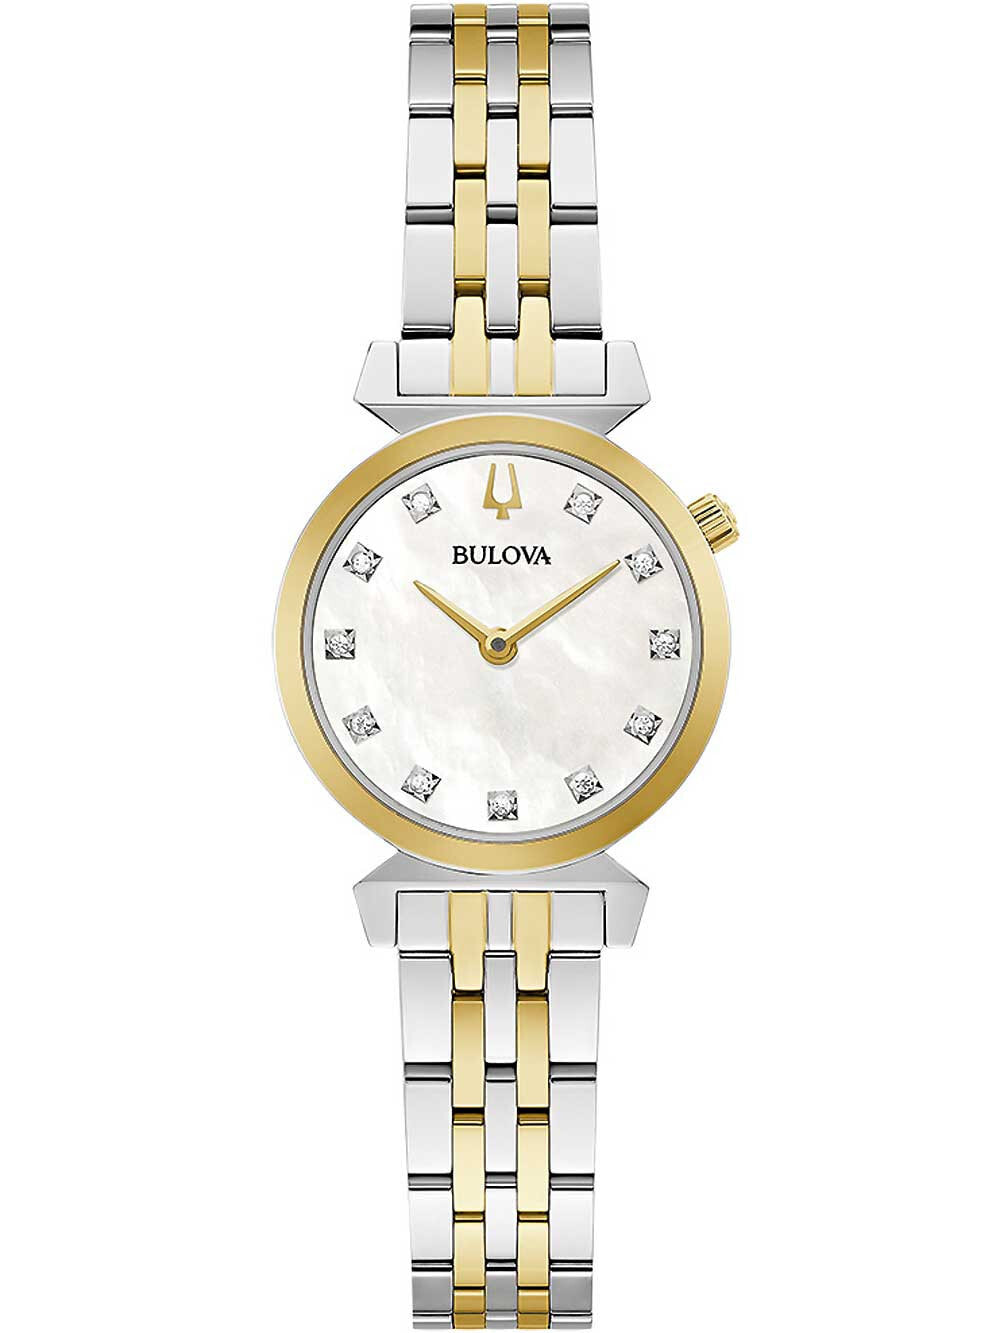 Женские наручные кварцевые часы Bulova ремешок из нержавеющей стали. Водонепроницаемость-3 АТМ. Защищенное от царапин минеральное стекло. циферблат декорирован 11 бриллиантами.